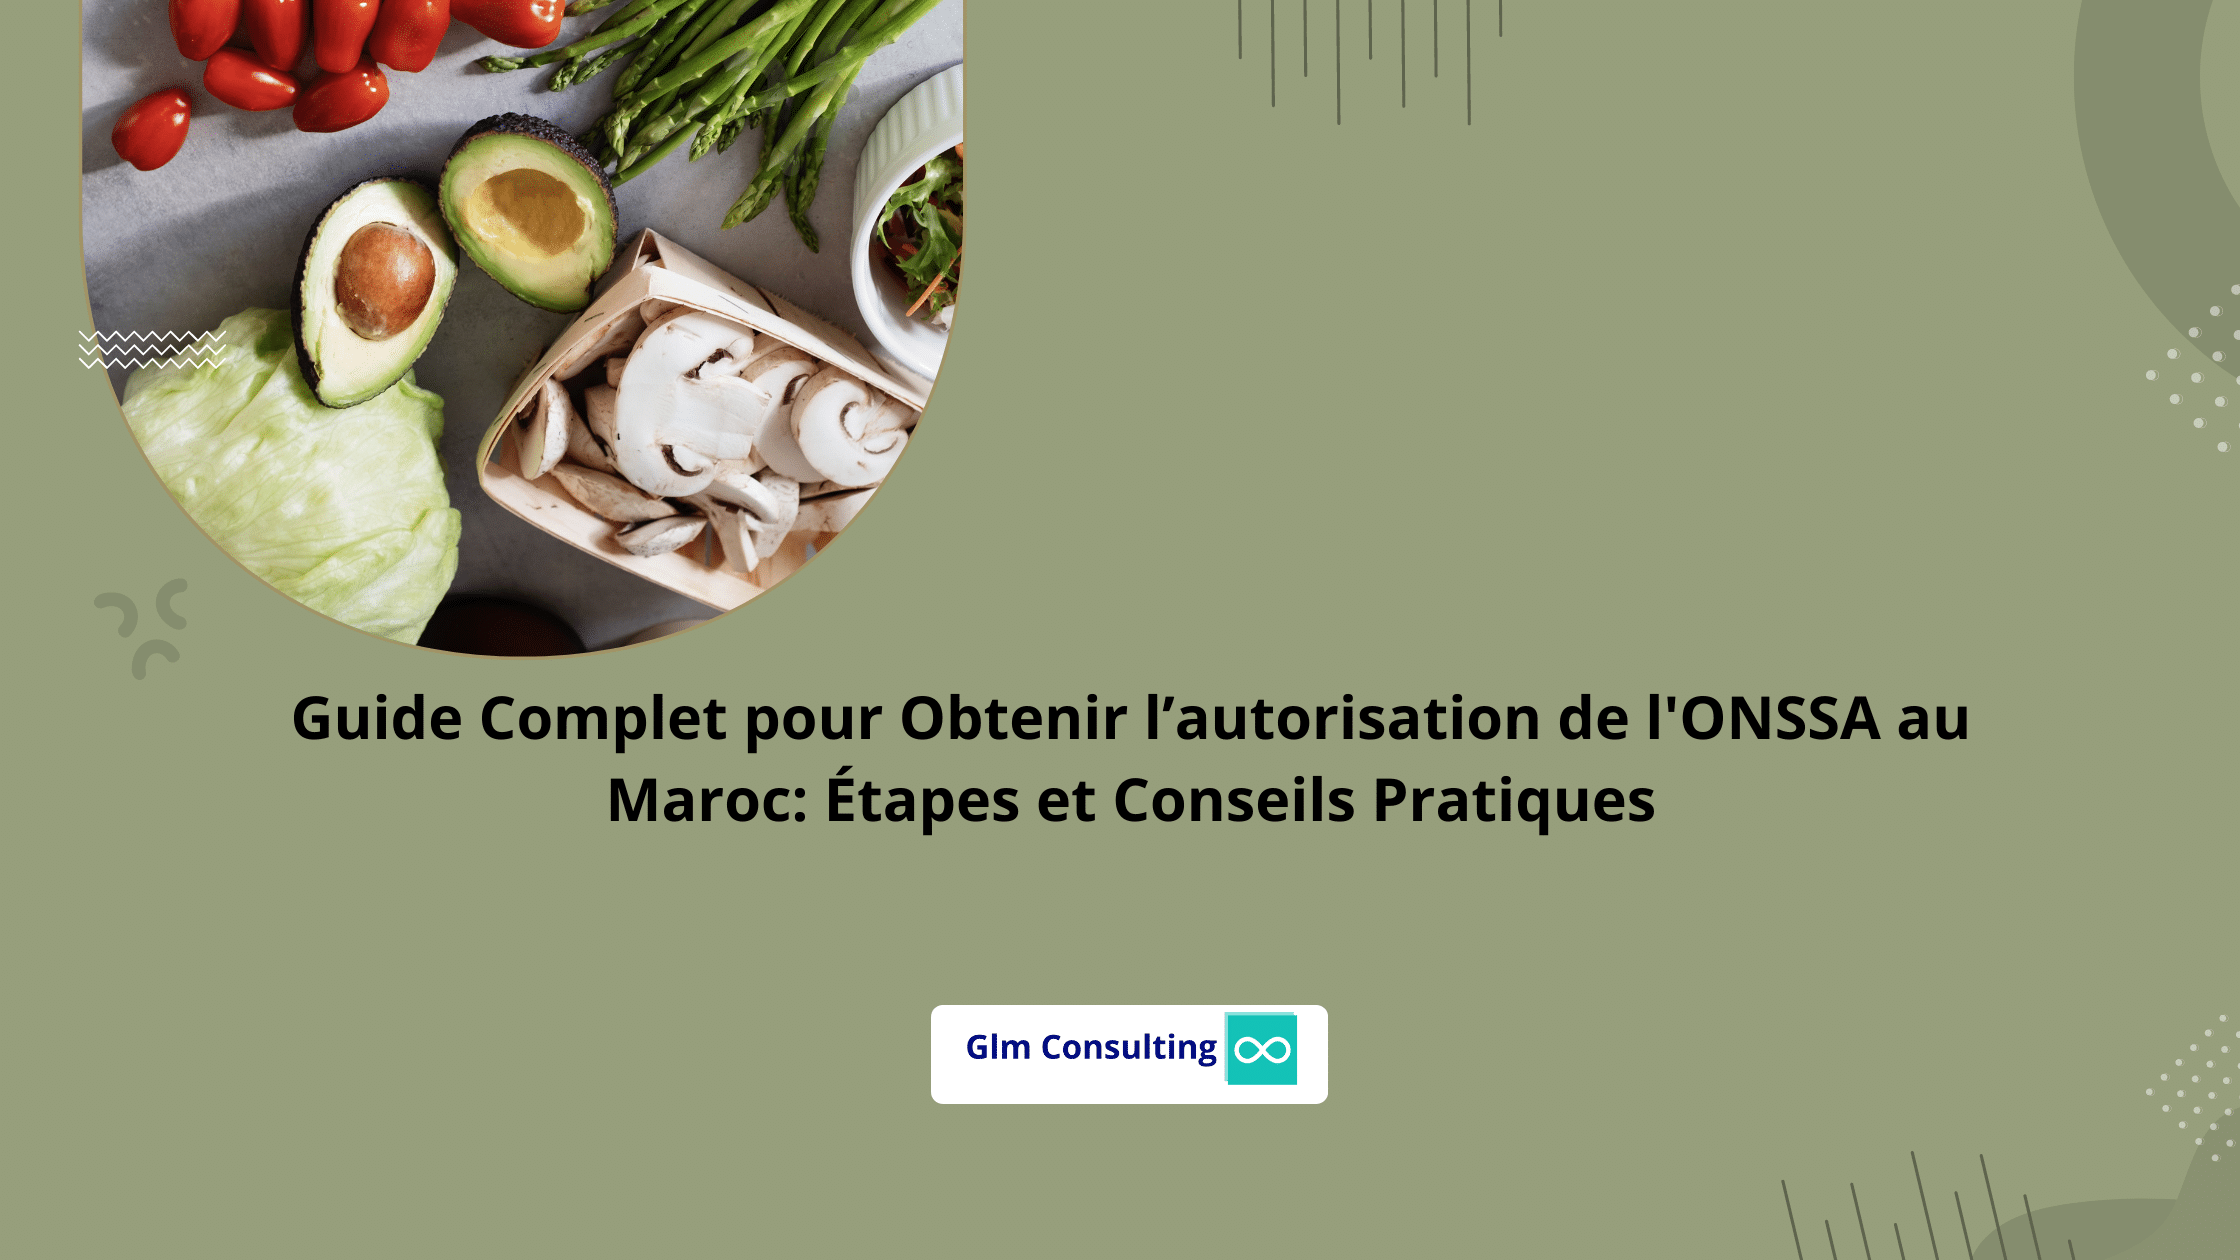 Guide Complet pour Obtenir l’autorisation de l'ONSSA au Maroc Étapes et Conseils Pratiques (1)